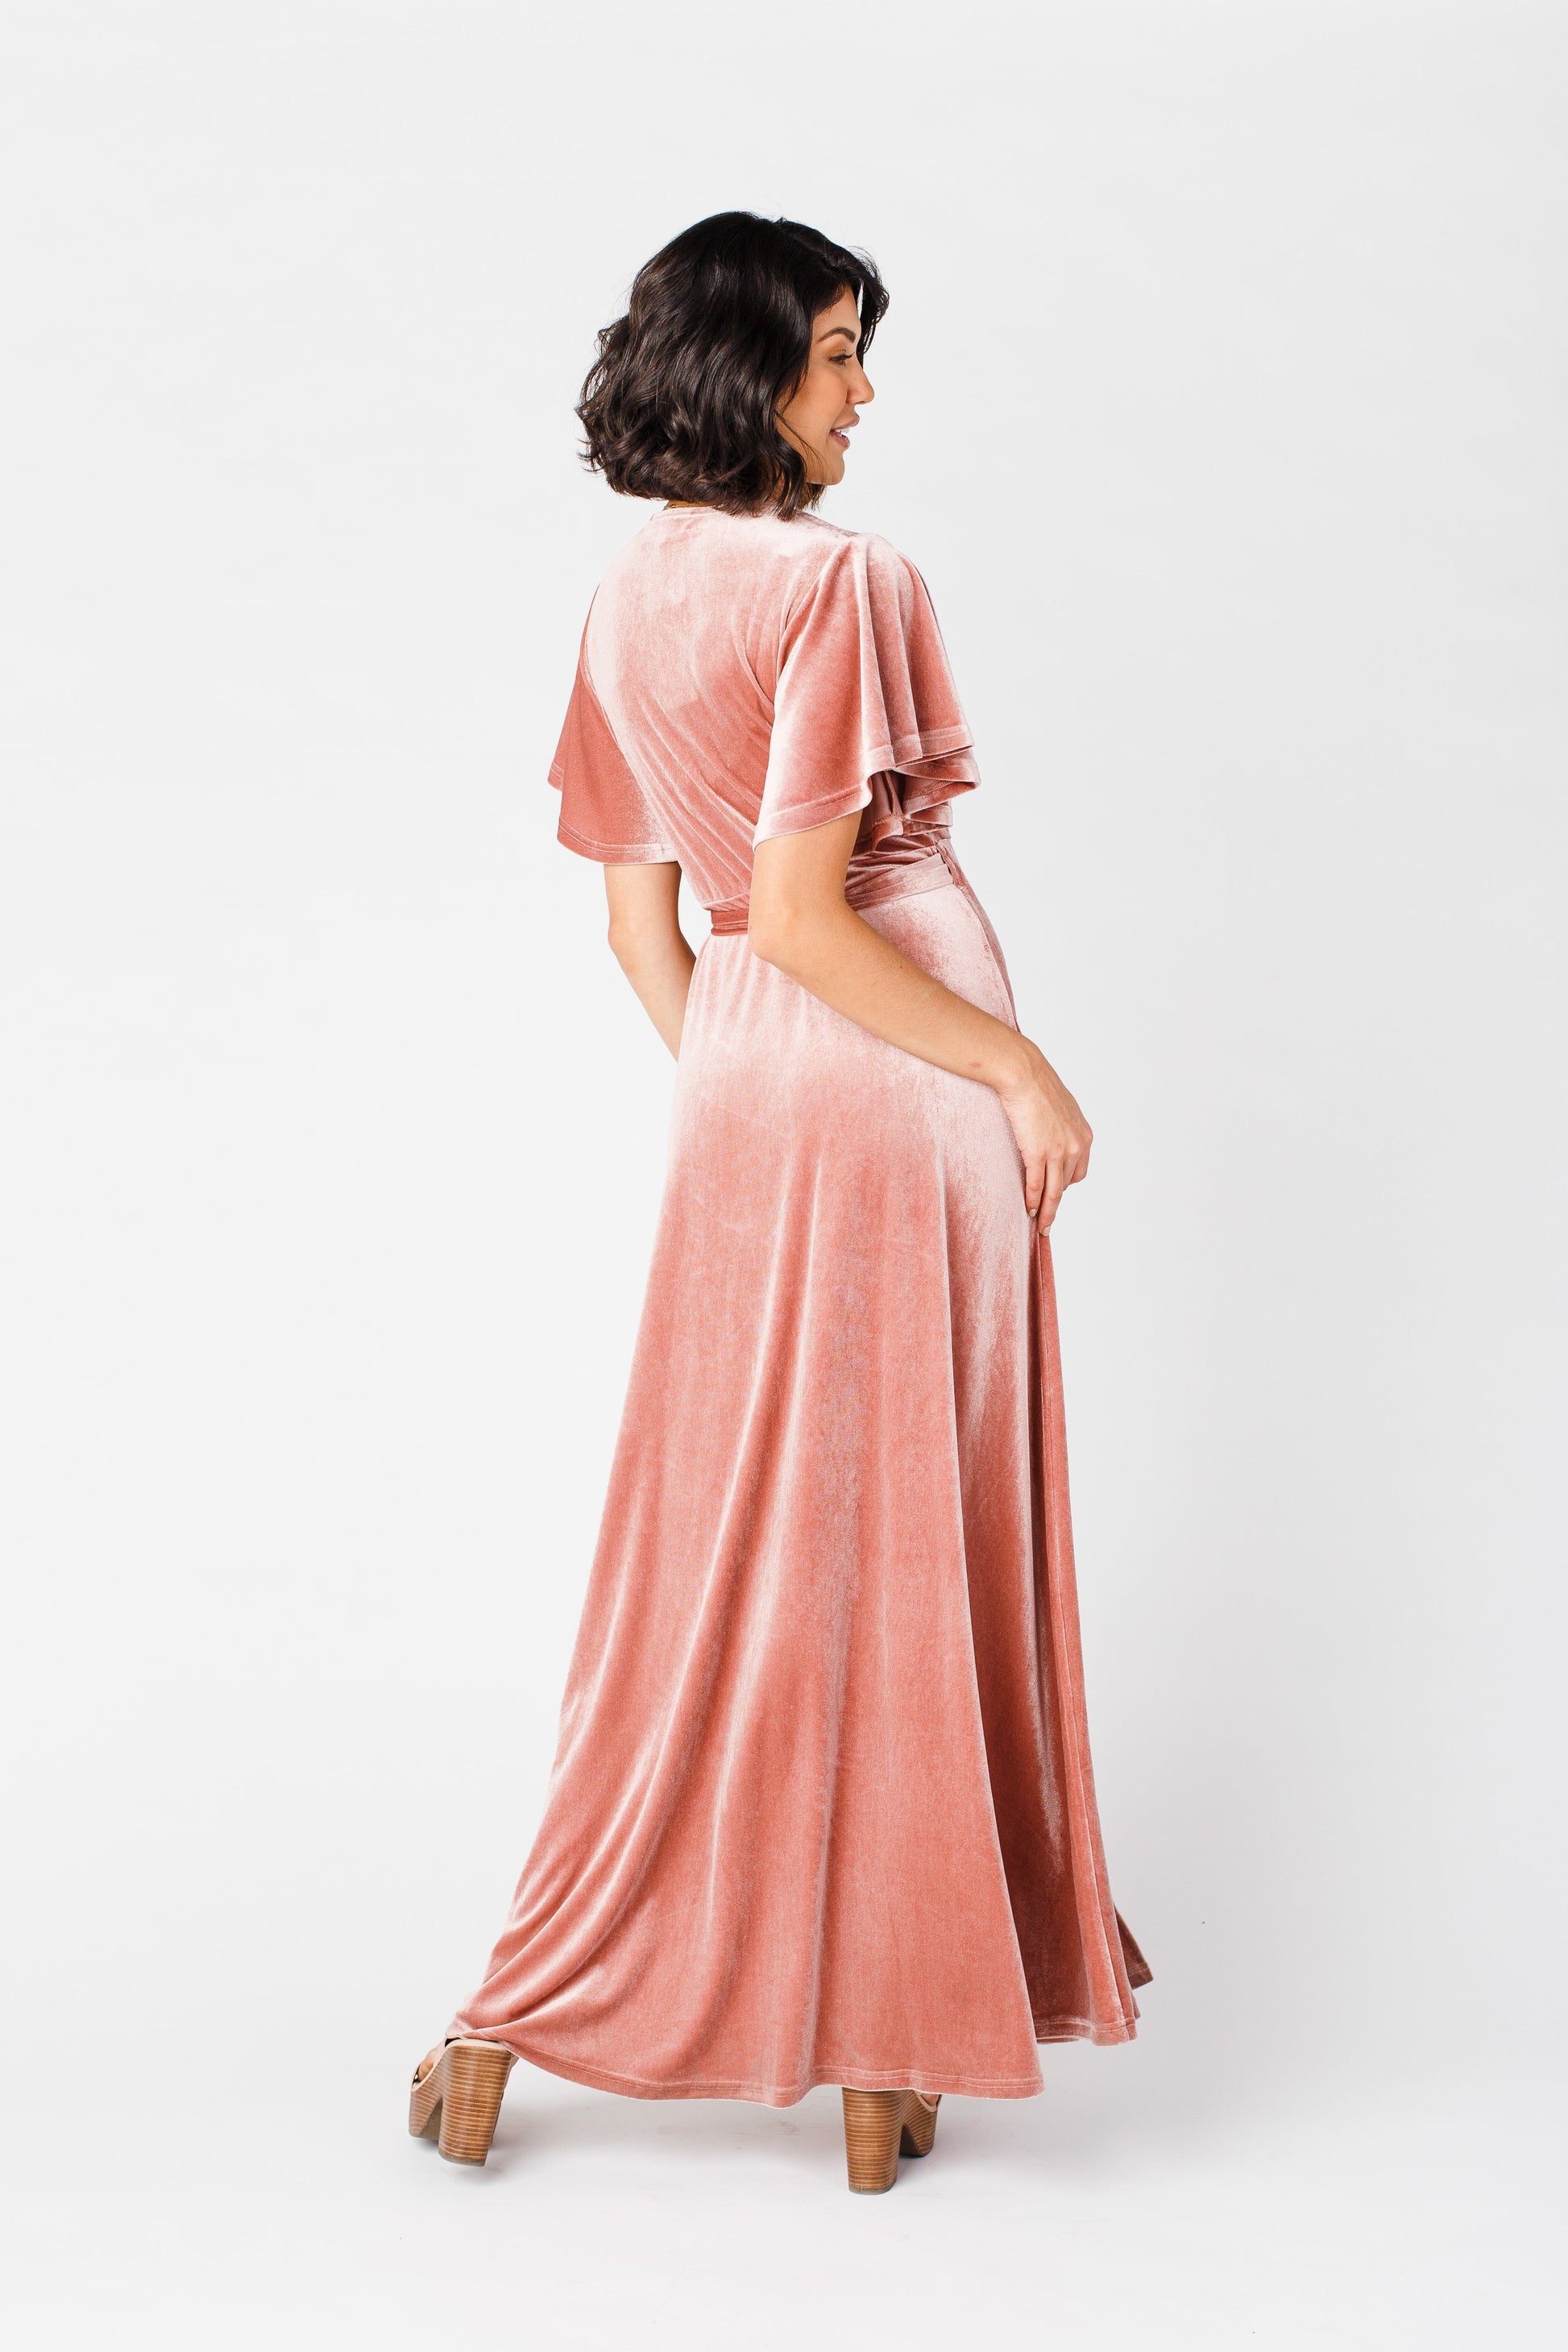 Arbor Velvet Wrap Dress - Pink WOMEN'S DRESS Arbor 